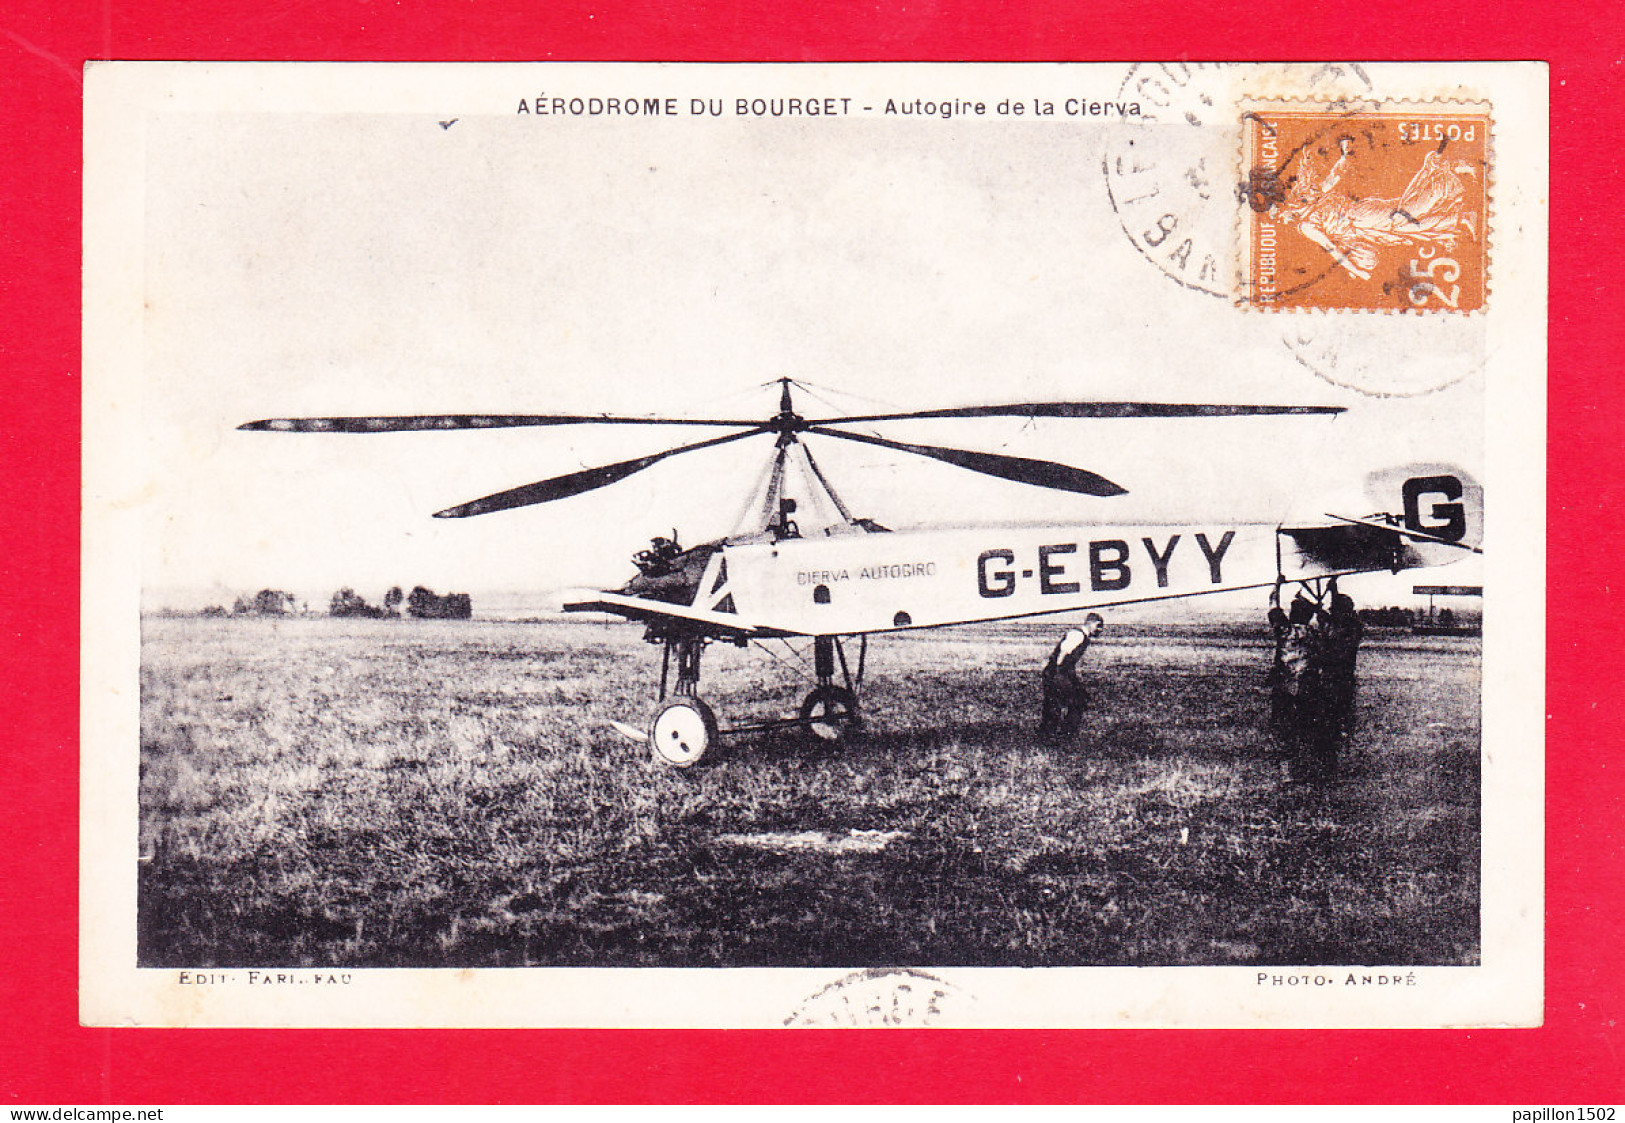 Aviation-527Ph100  Aérodrome Du Bourget, Autogire De La Cierva, Cpa BE - 1919-1938: Entre Guerres